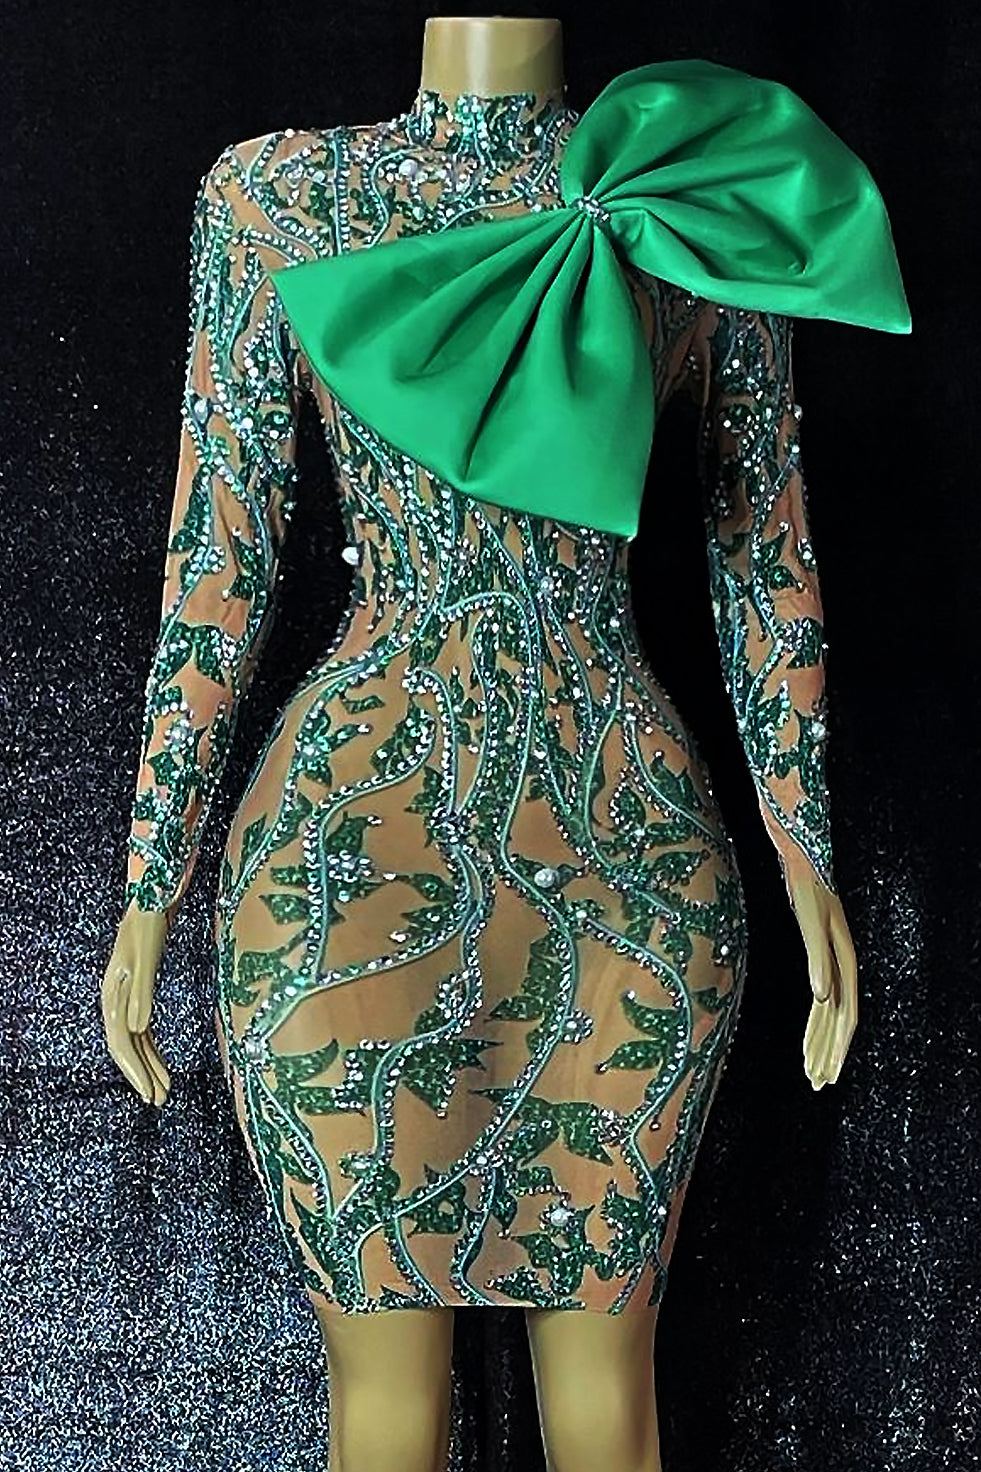 Peta Diamante Green Bow Dress (Ready To Ship)